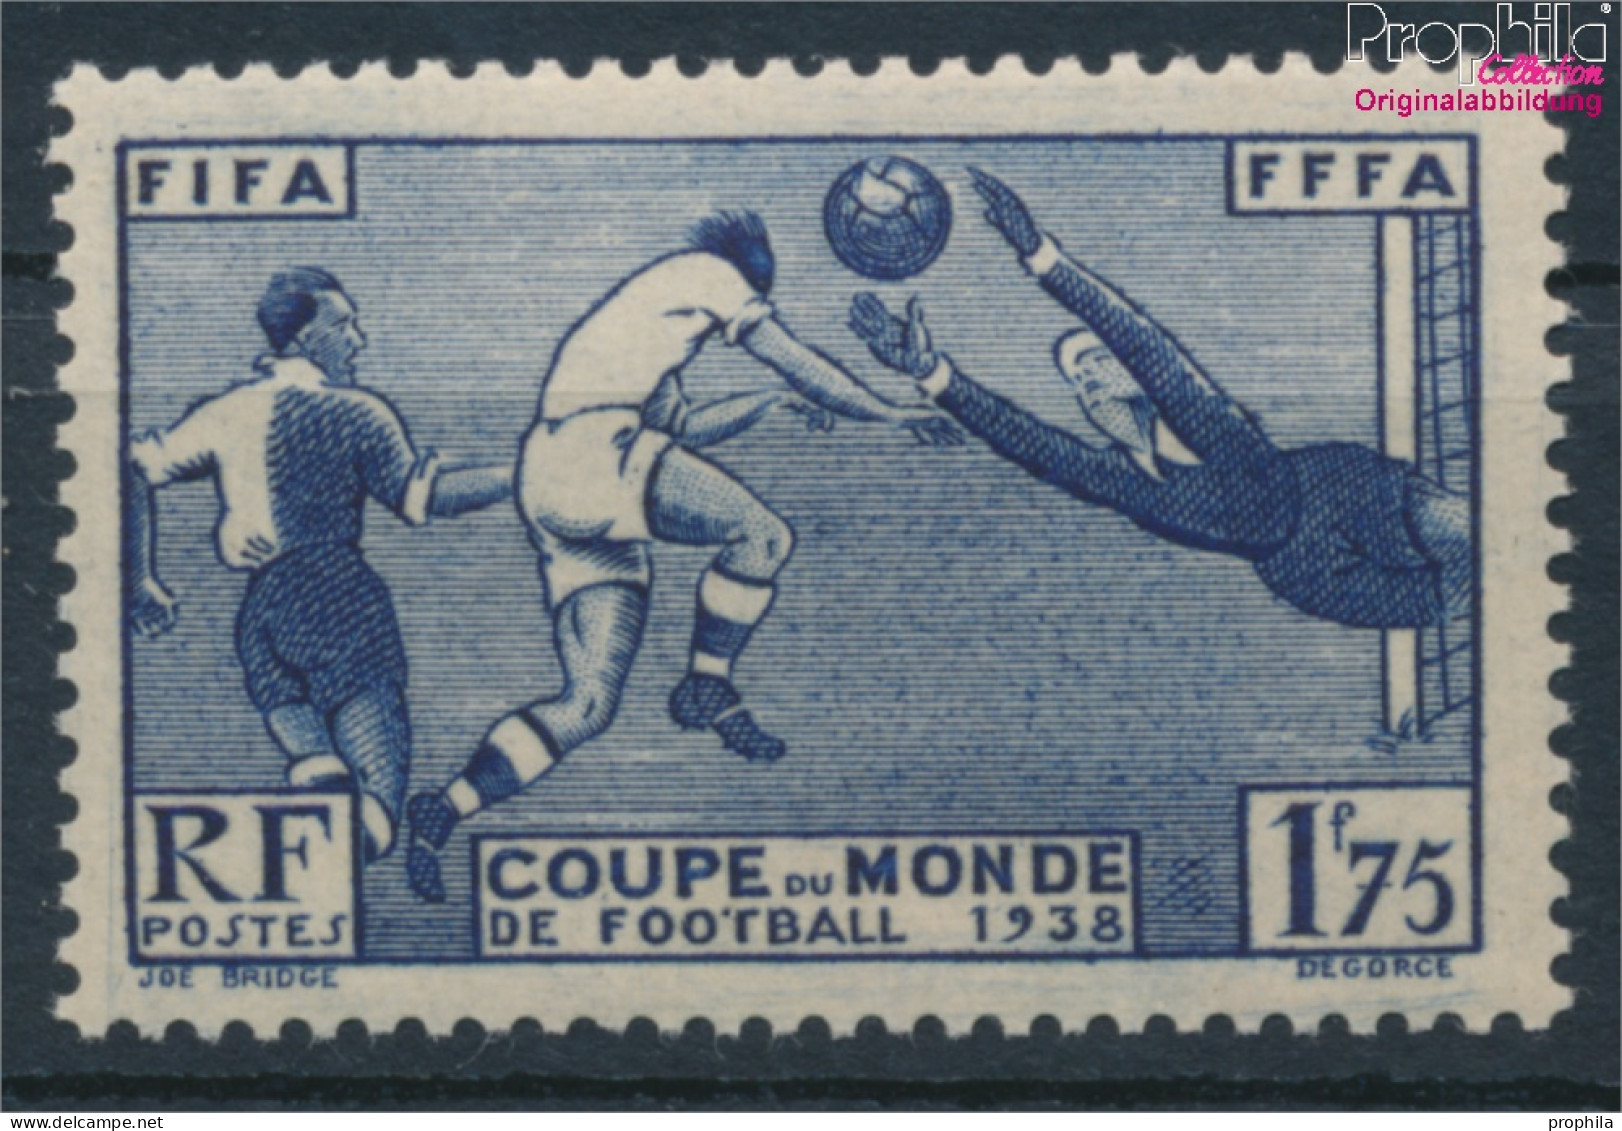 Frankreich 427 (kompl.Ausg.) Postfrisch 1938 Fußball-WM (10391182 - Unused Stamps